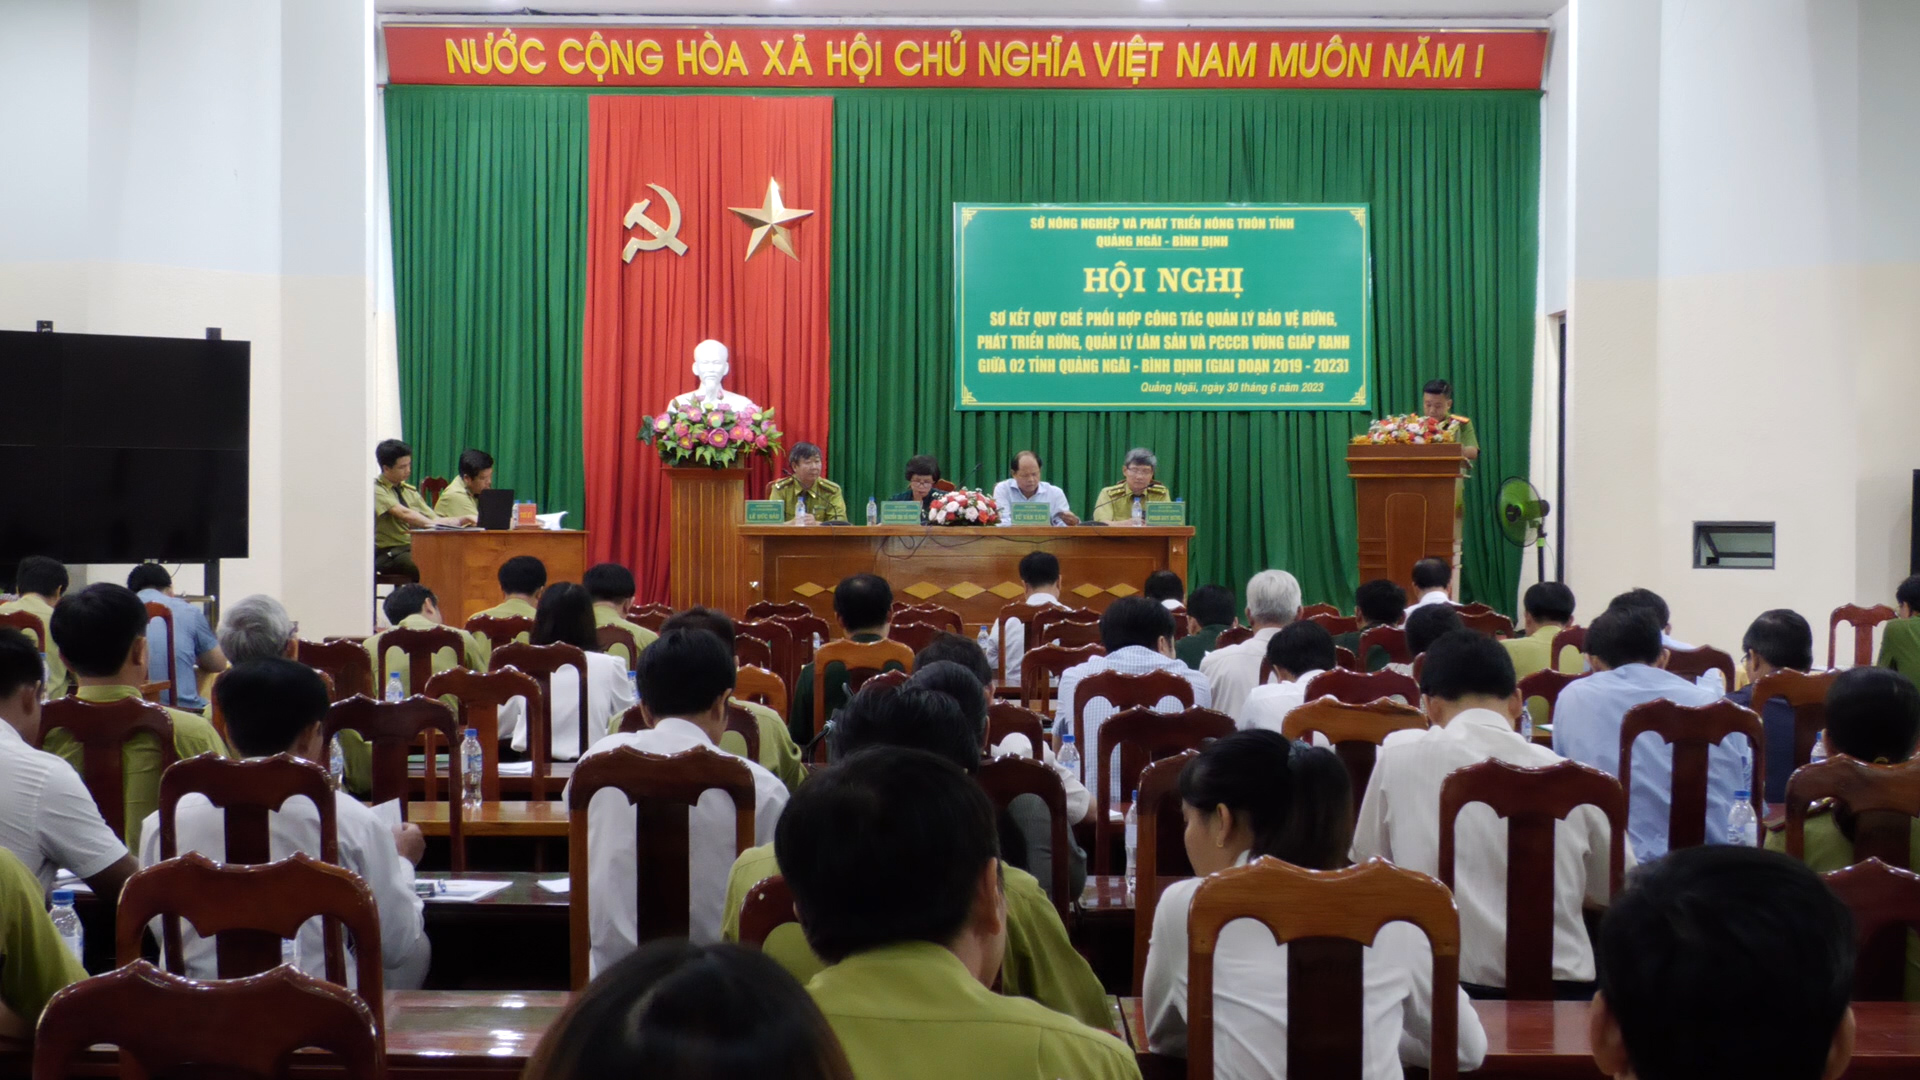 Sơ kết Quy chế phối hợp công tác quản lý bảo vệ rừng vùng giáp ranh giữa 02 tỉnh Quảng Ngãi và Bình Định